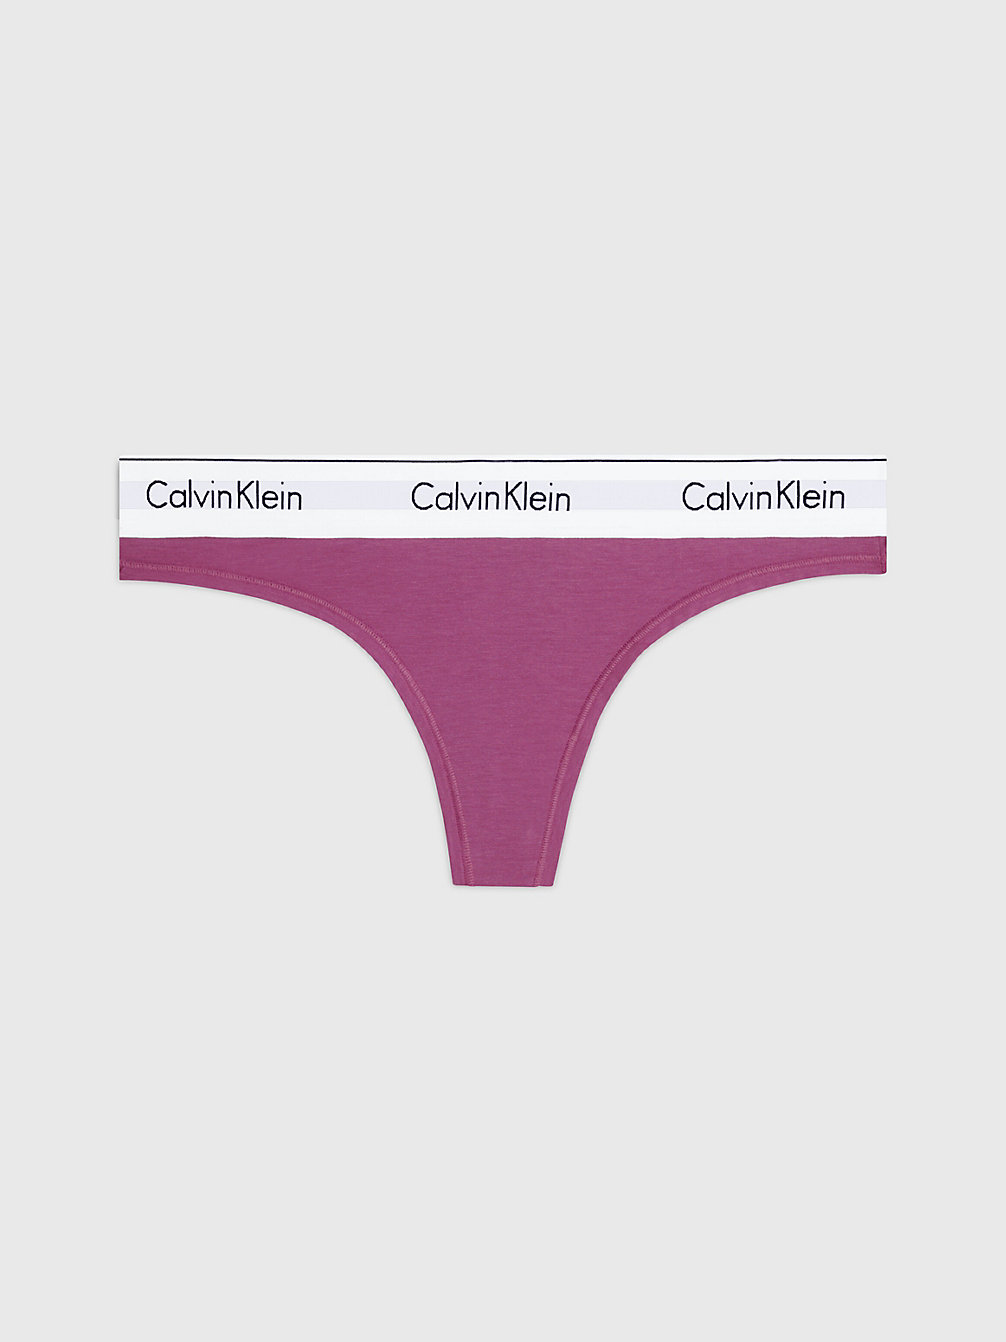 AMETHYST > String - Modern Cotton > undefined dames - Calvin Klein